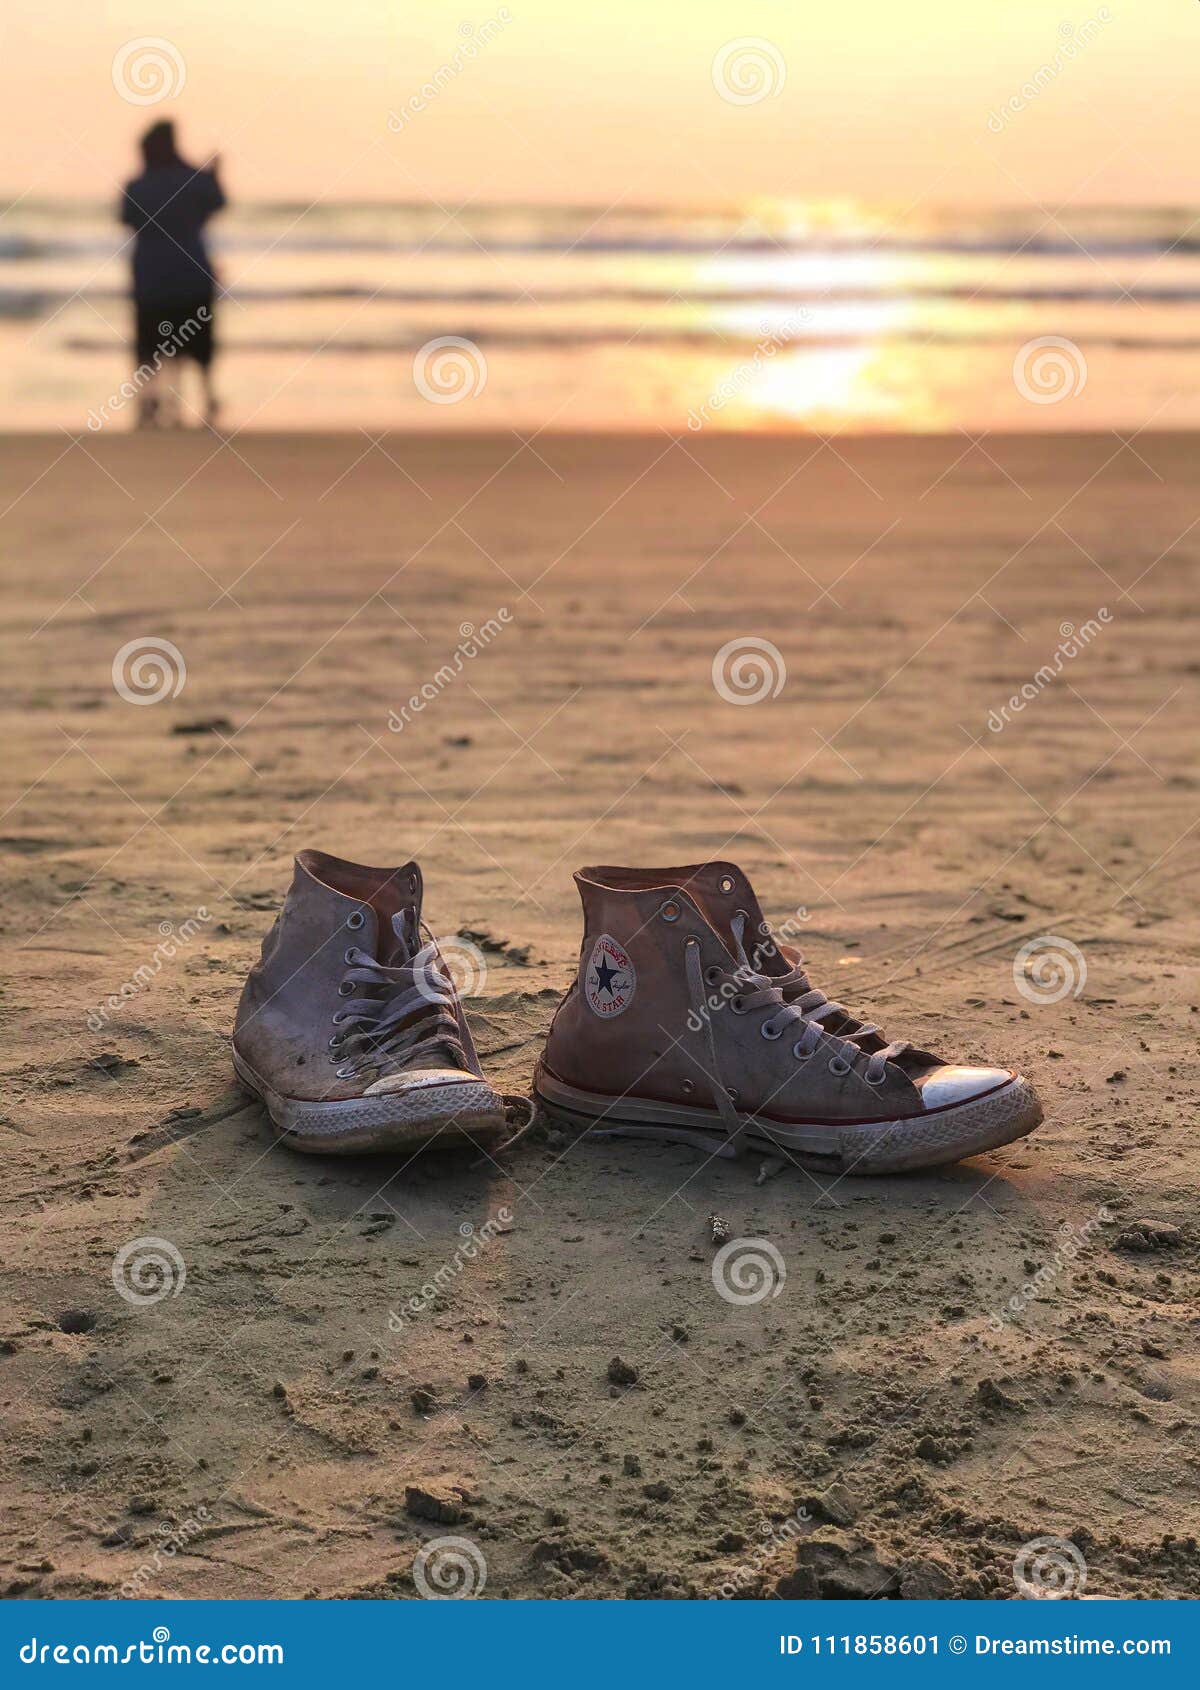 Gute Schwingungen. Schuhe, Sonnenuntergang und Strand, was wir mehr bitten kann